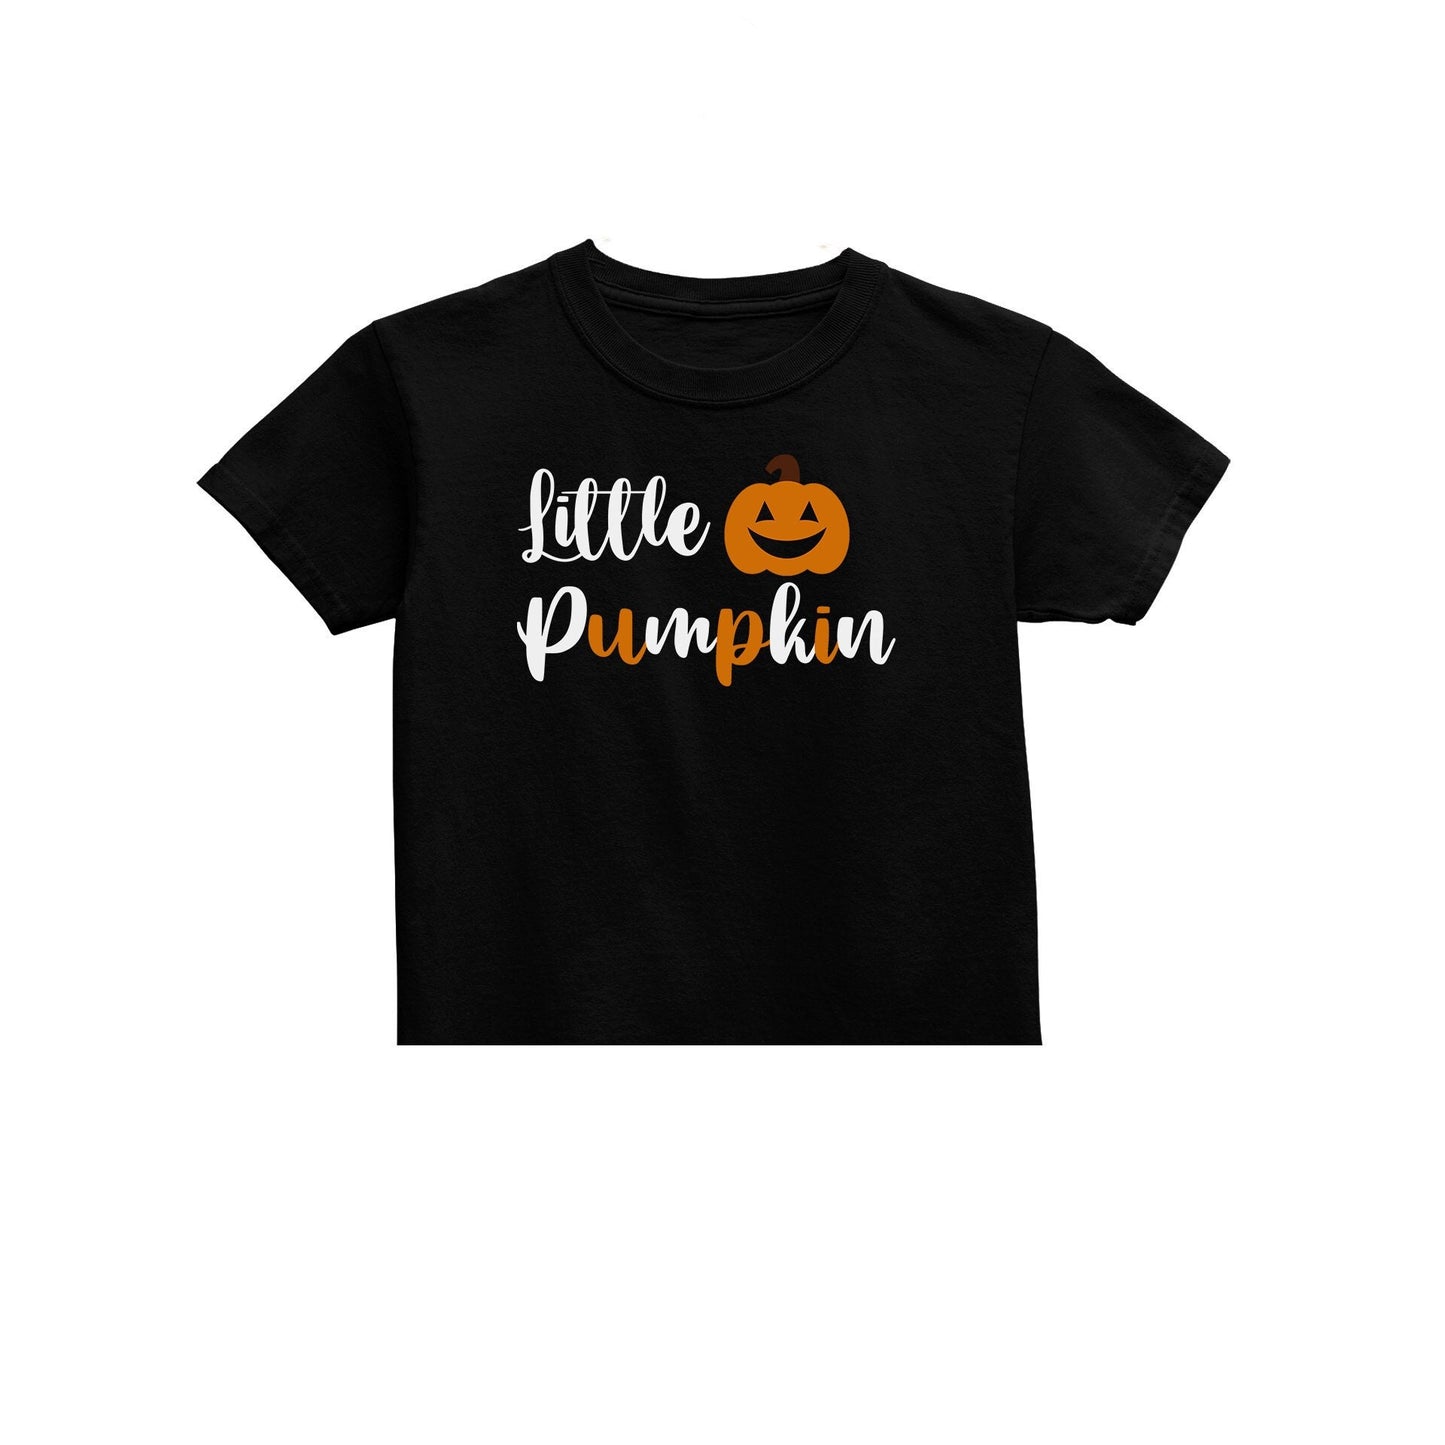 Unisex Kids Little Pumpkin Kids T-Shirt